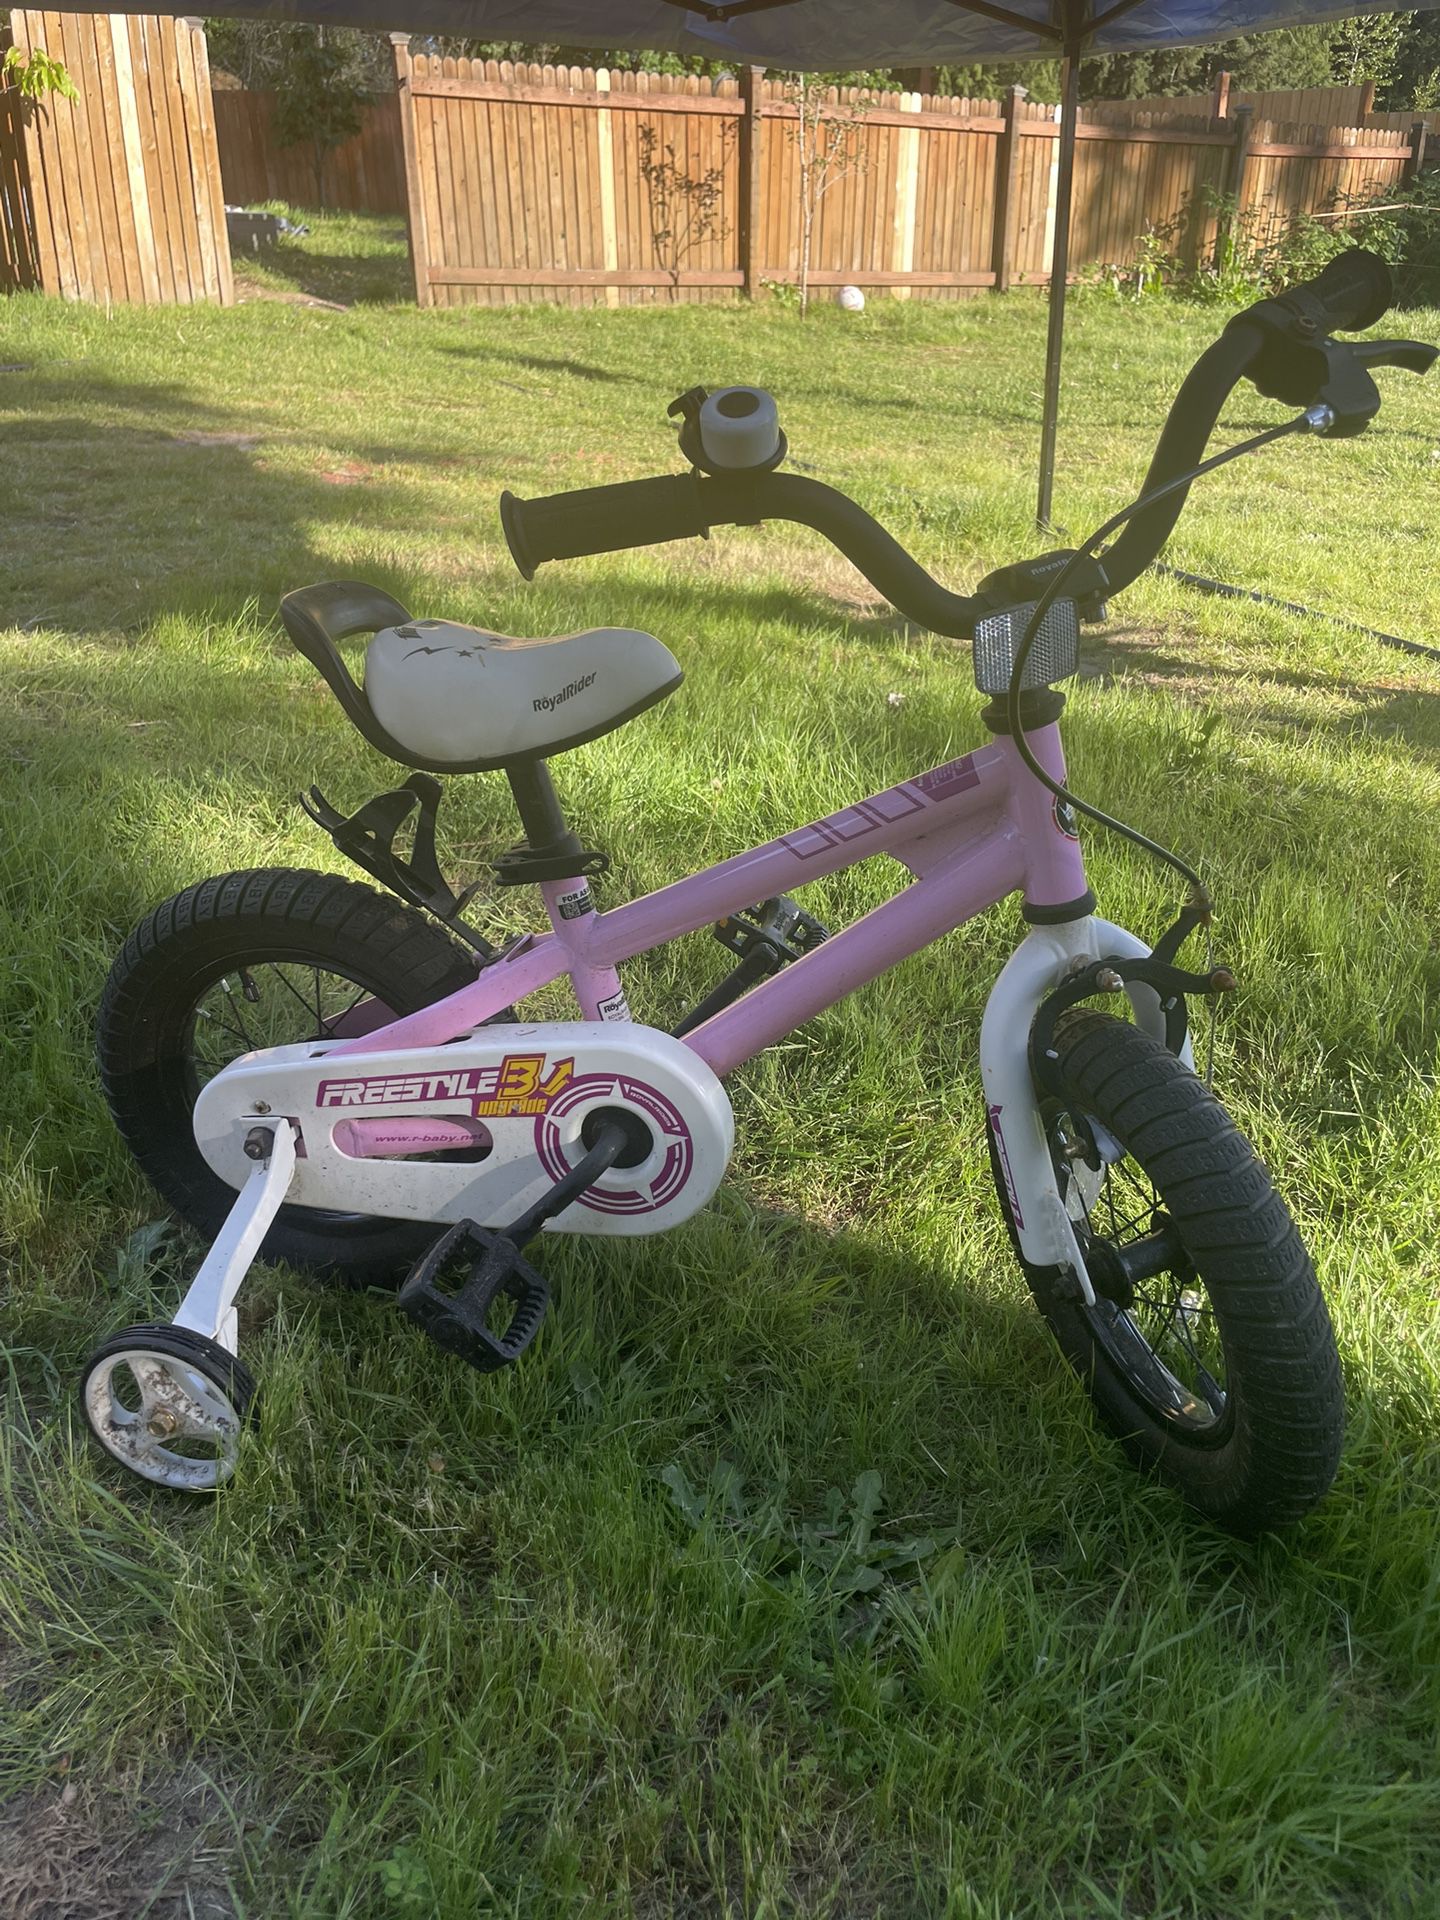 Bike For Toddler 